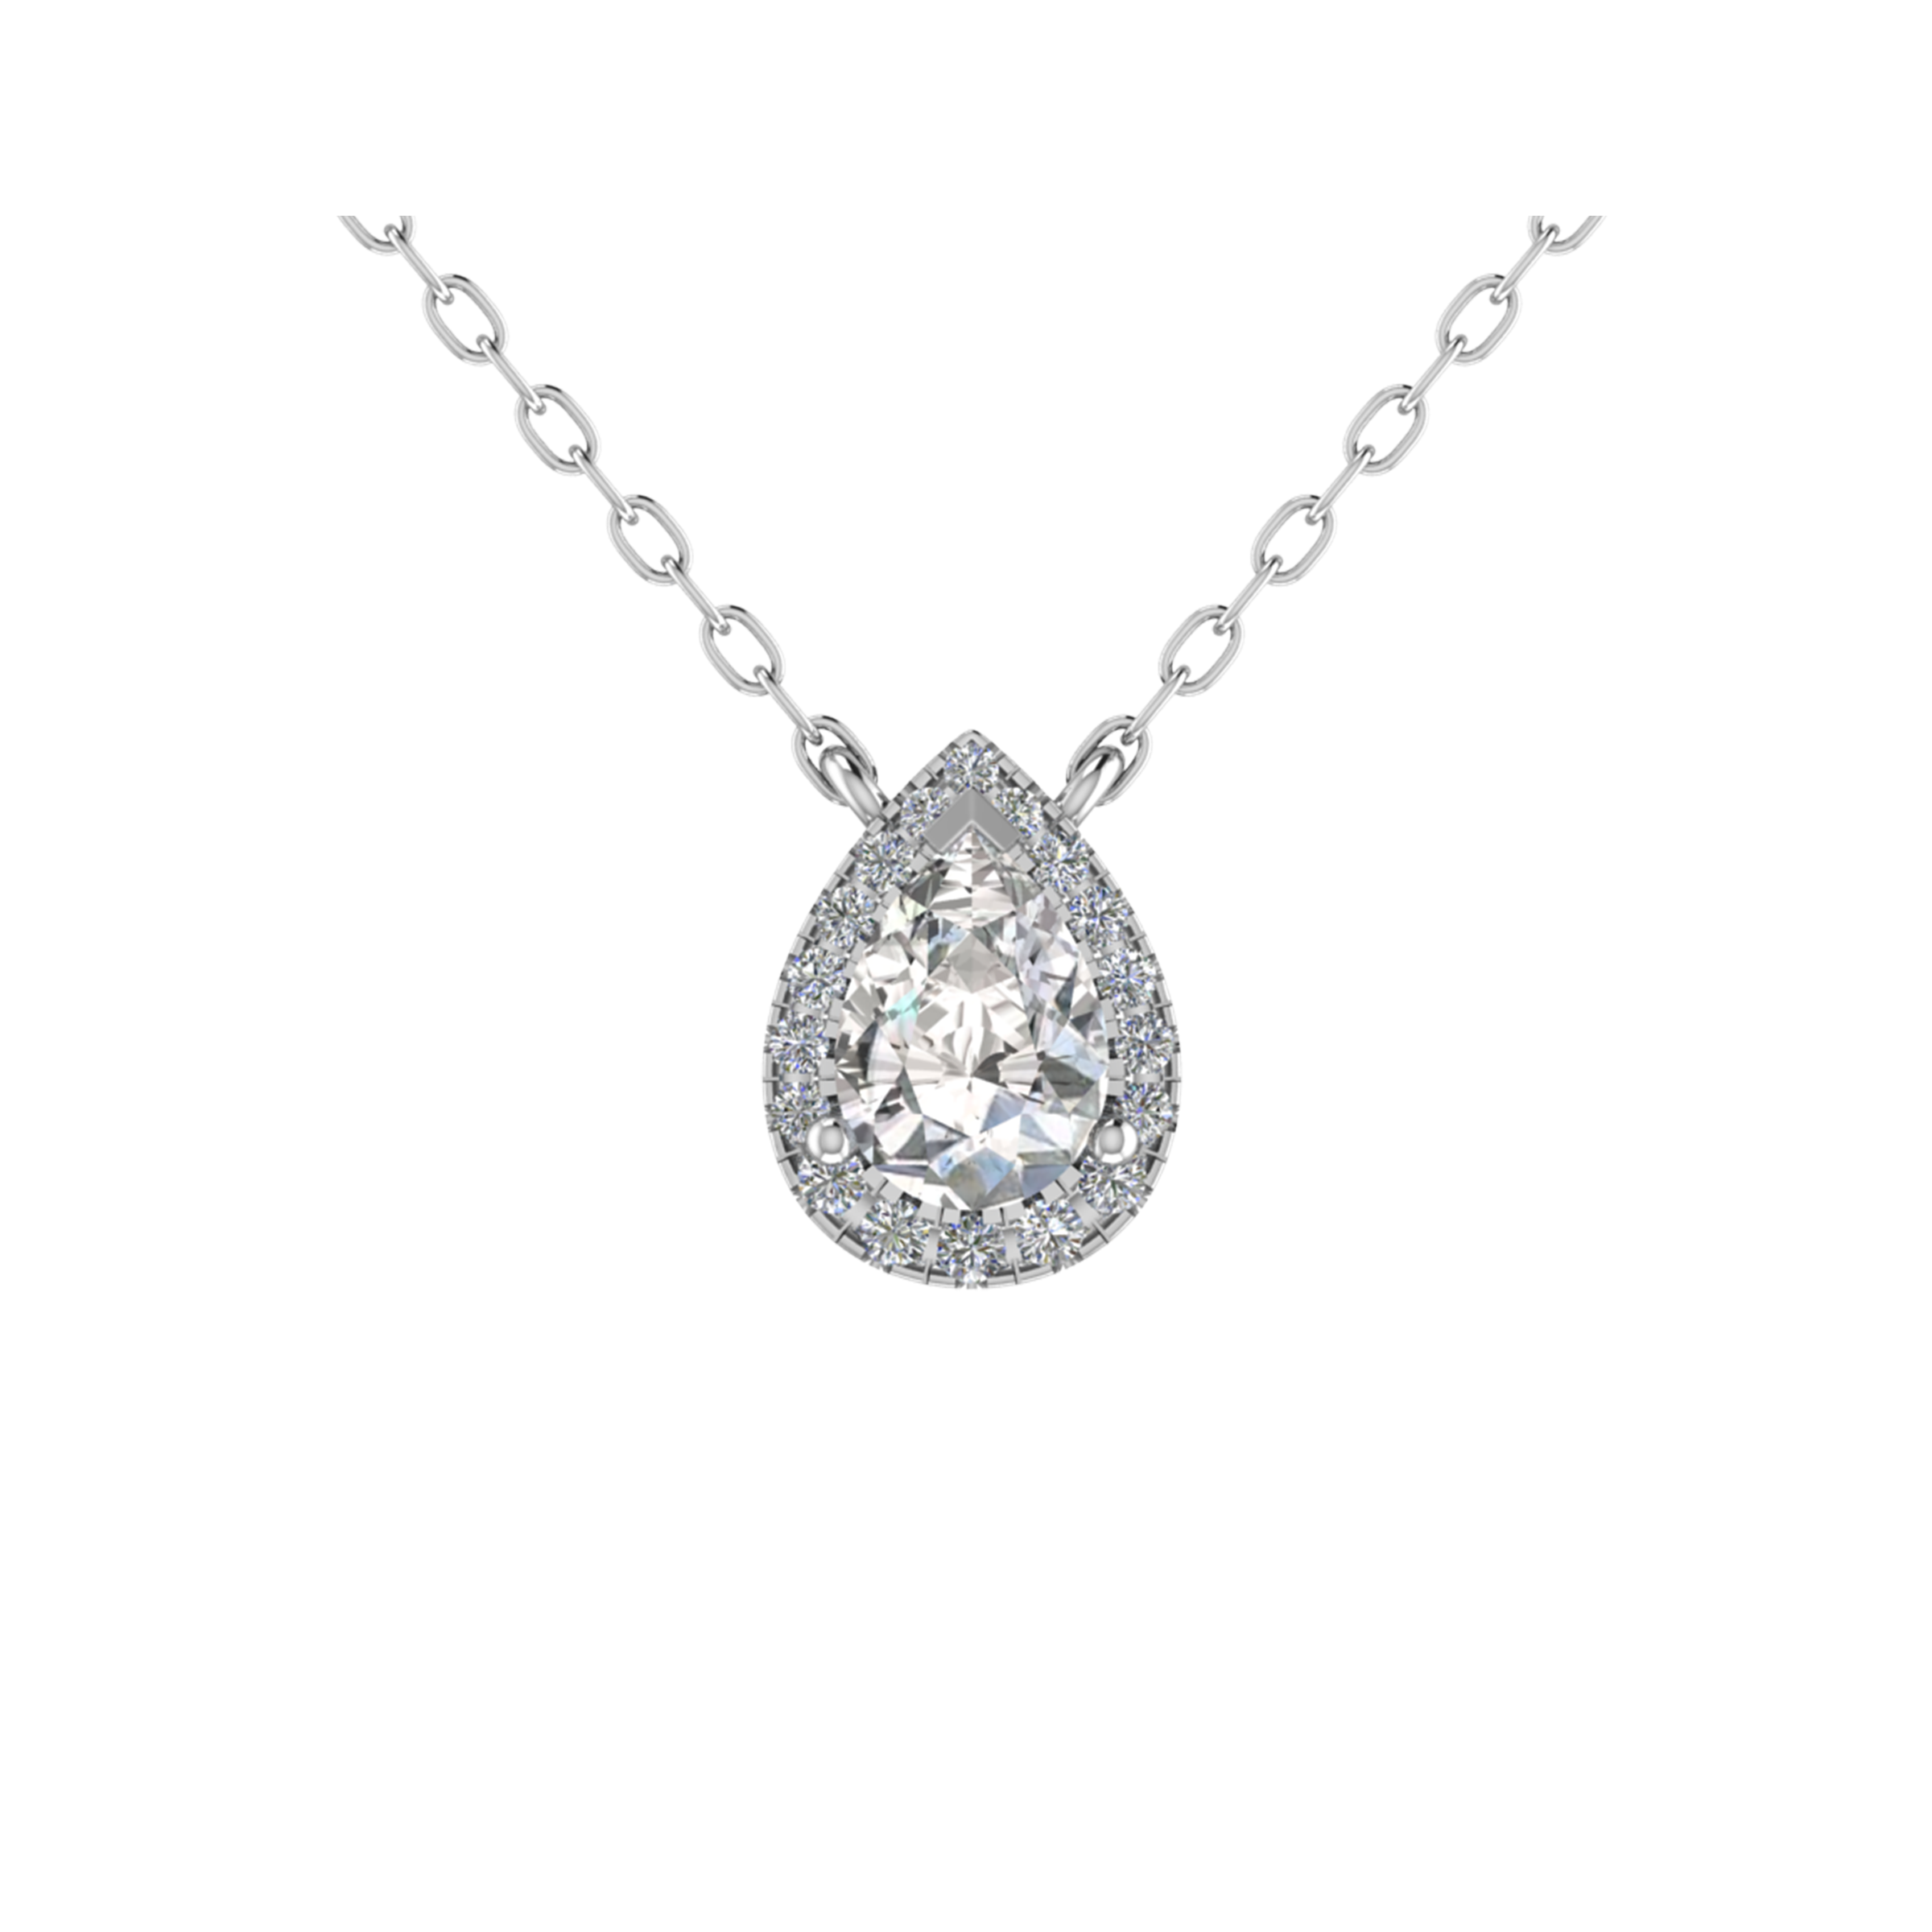 Diamond Set Pendants, Earrings, Pendants & Bracelets, Diamond Pendants, Wedding Pendants, Engagement Pendants, Engagement Diamond Pendants, Wedding Diamond Pendants